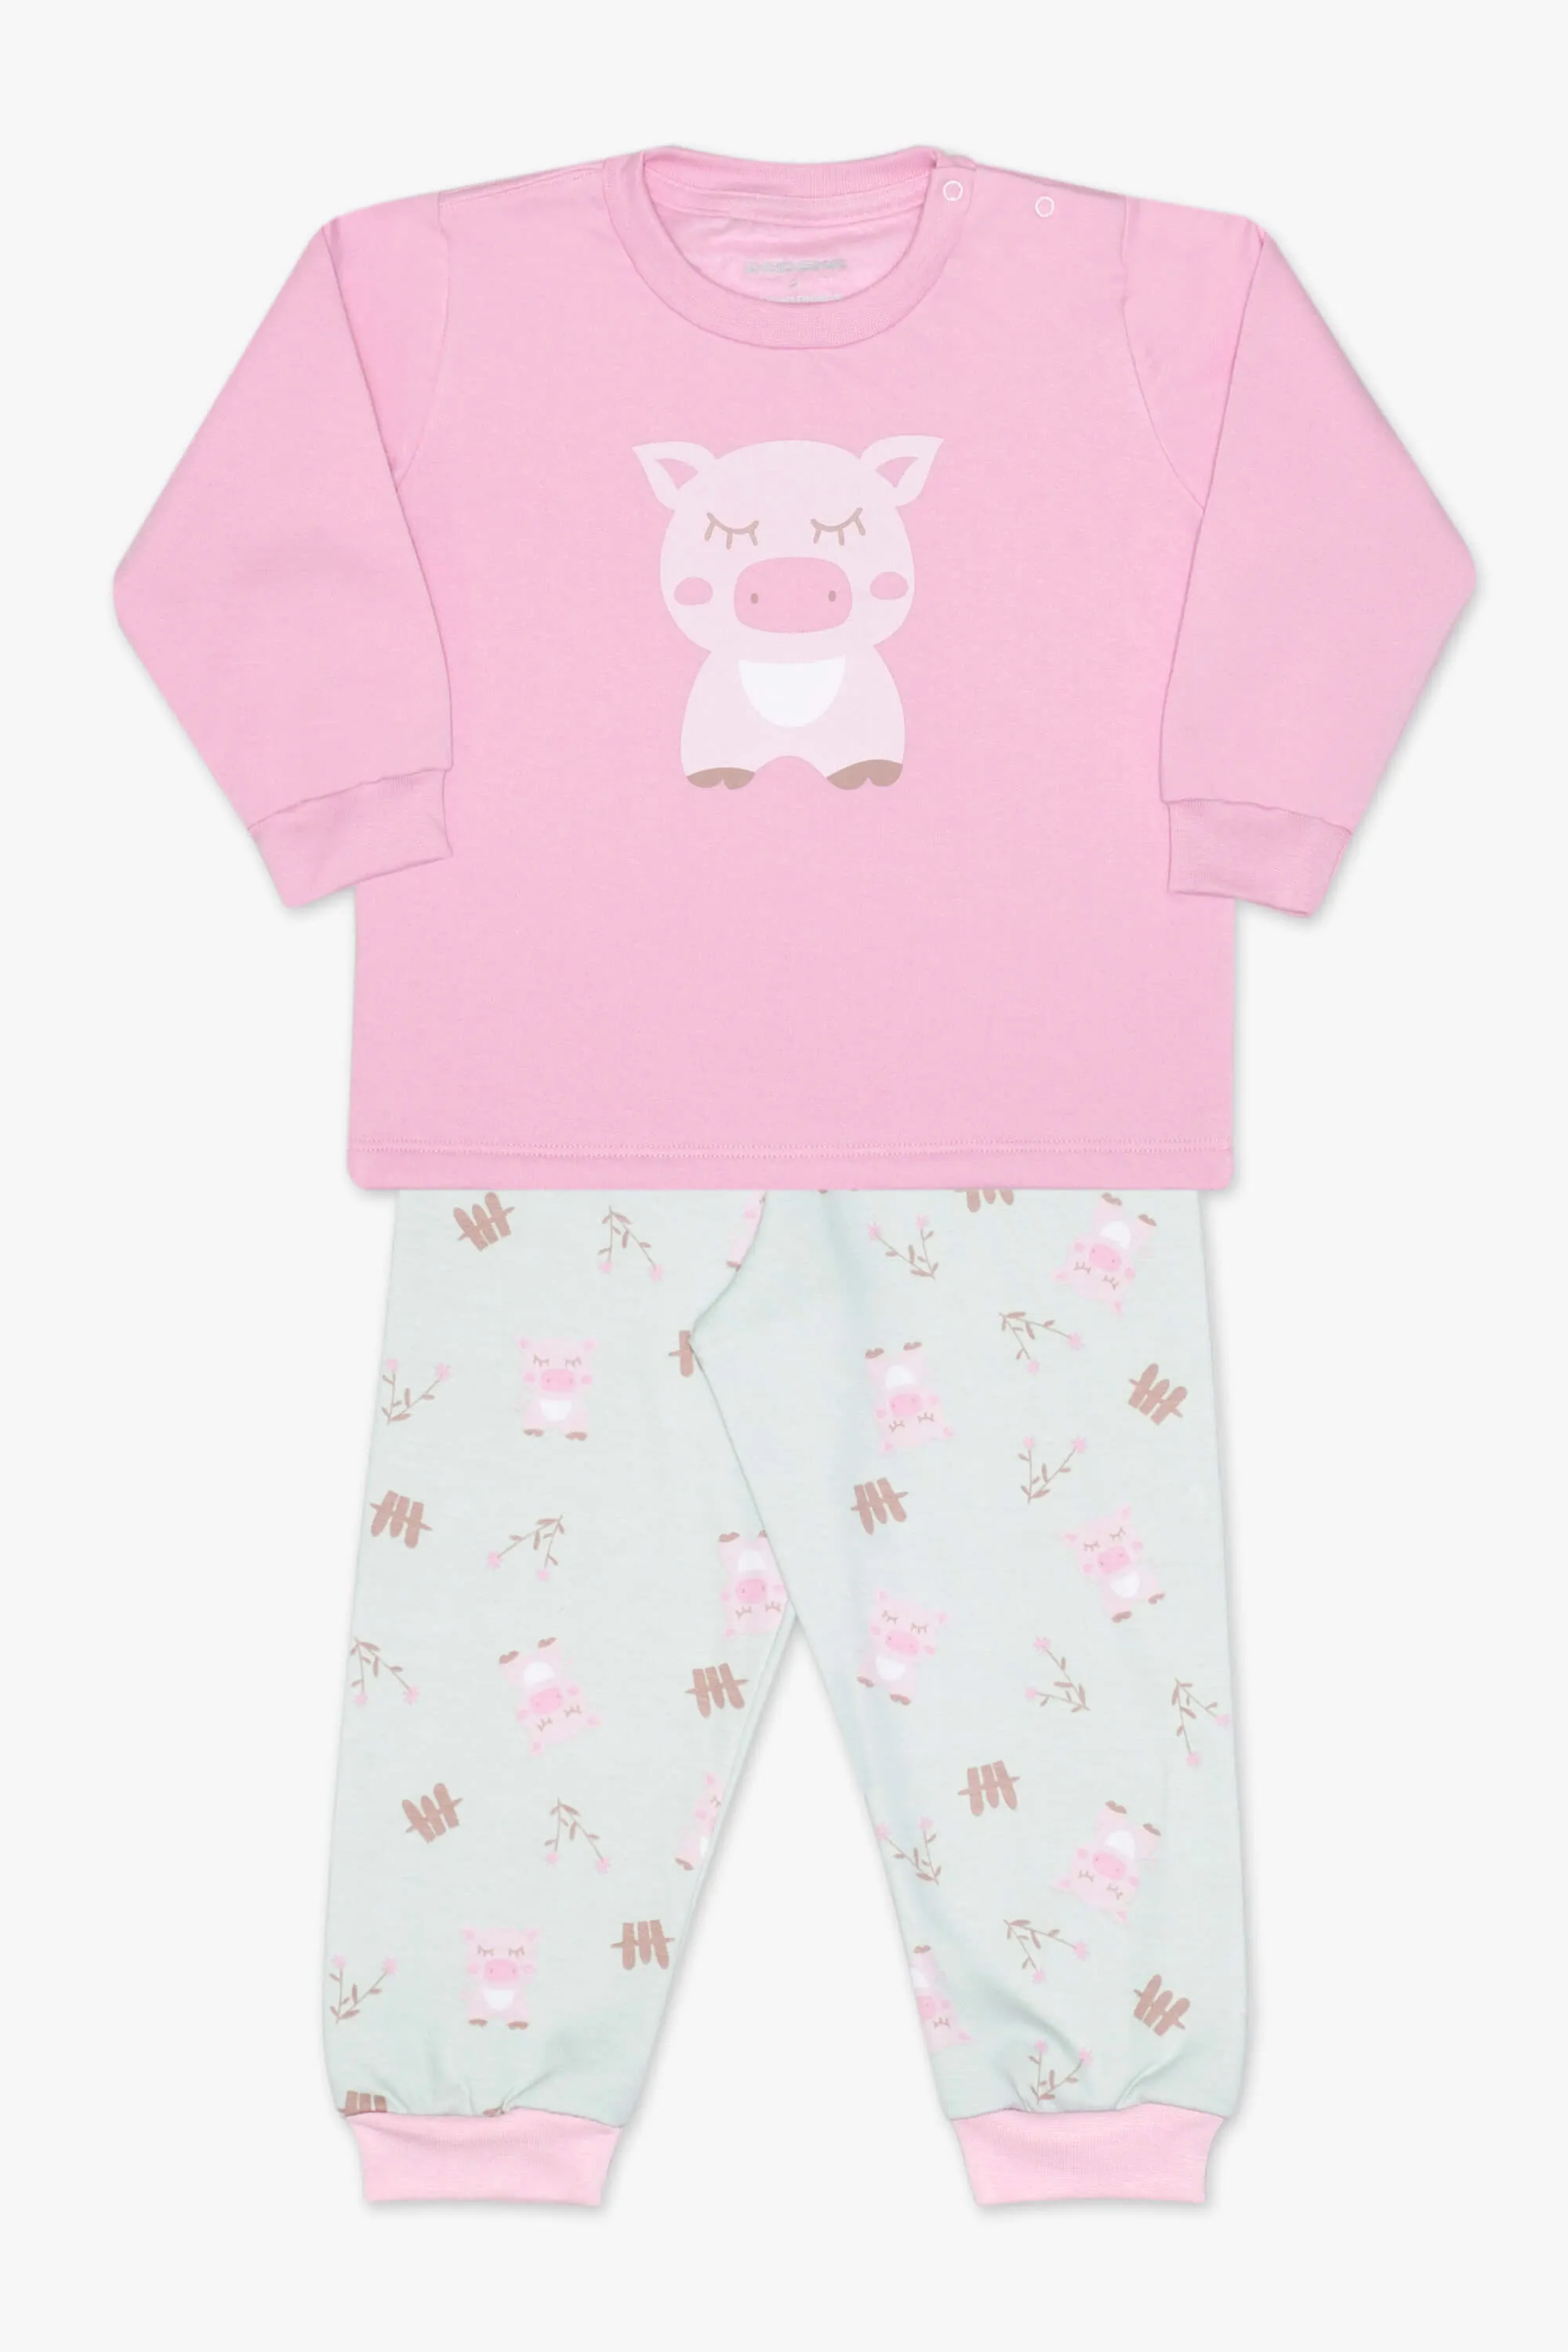 Pijama moletinho porquinho rosa T1 24692 Dedeka